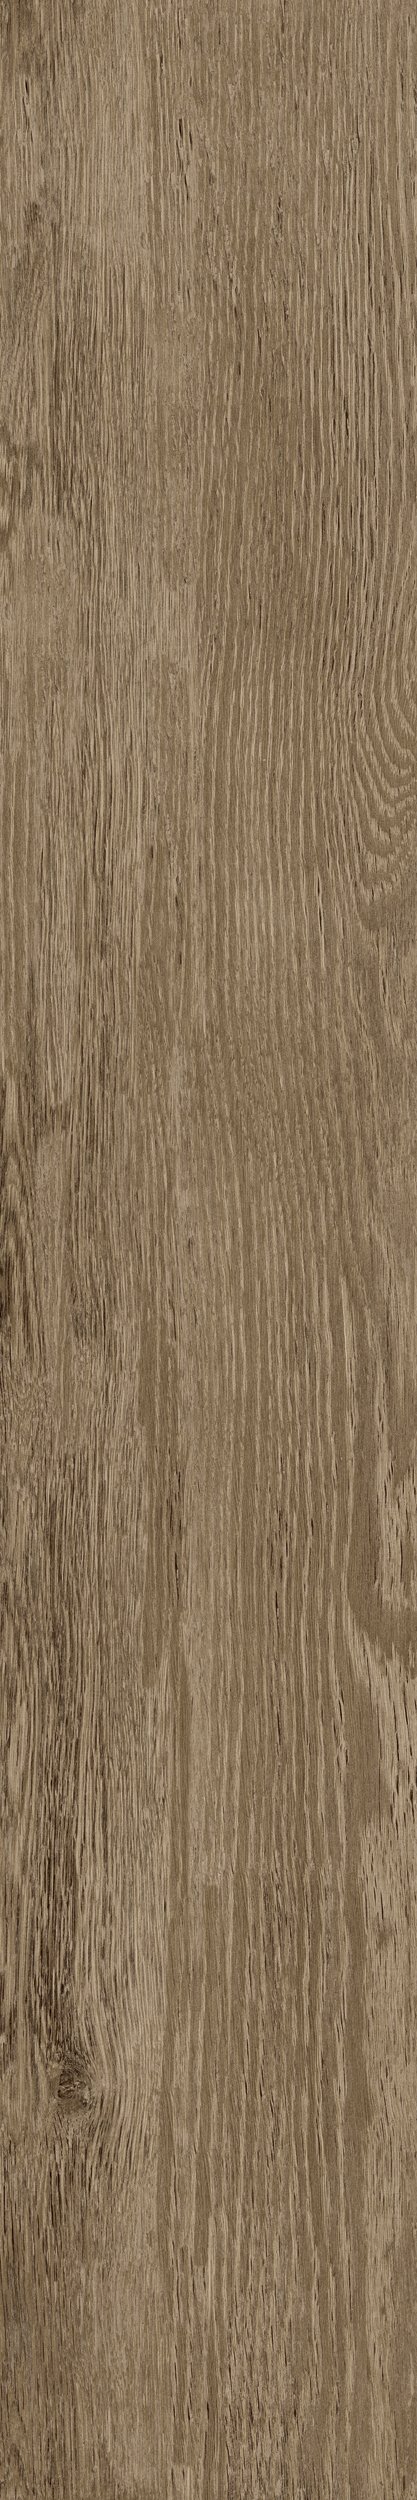 Fliese Eiche-Holzoptik braun 20x120 cm "Sunwood Walnut" rektifiziert